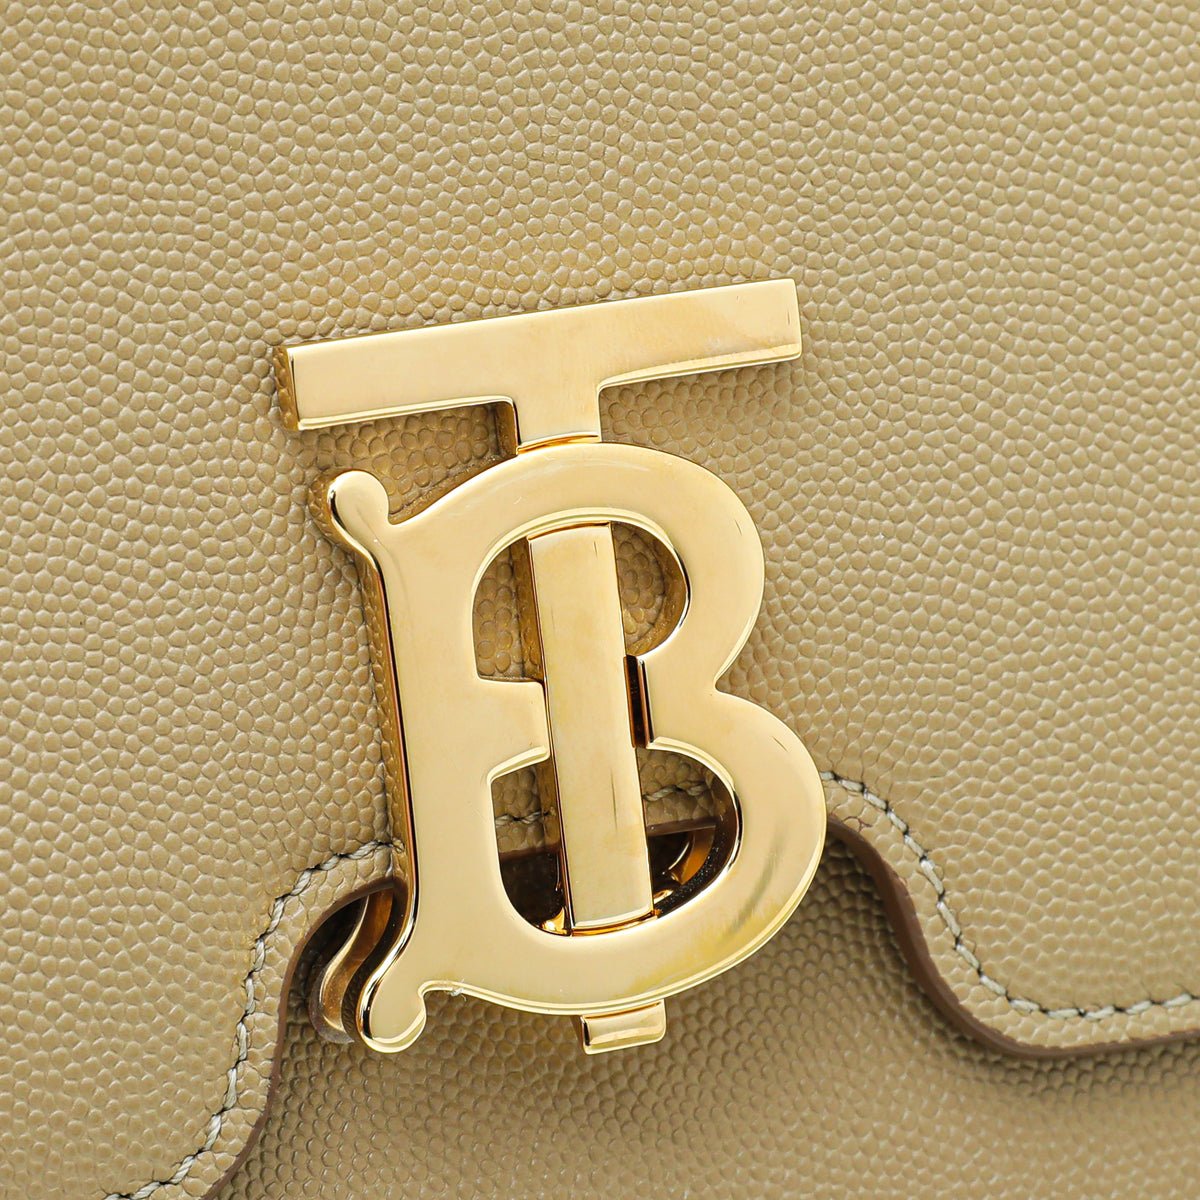 Burberry - Burberry Beige TB Logo Medium Flap Bag | The Closet